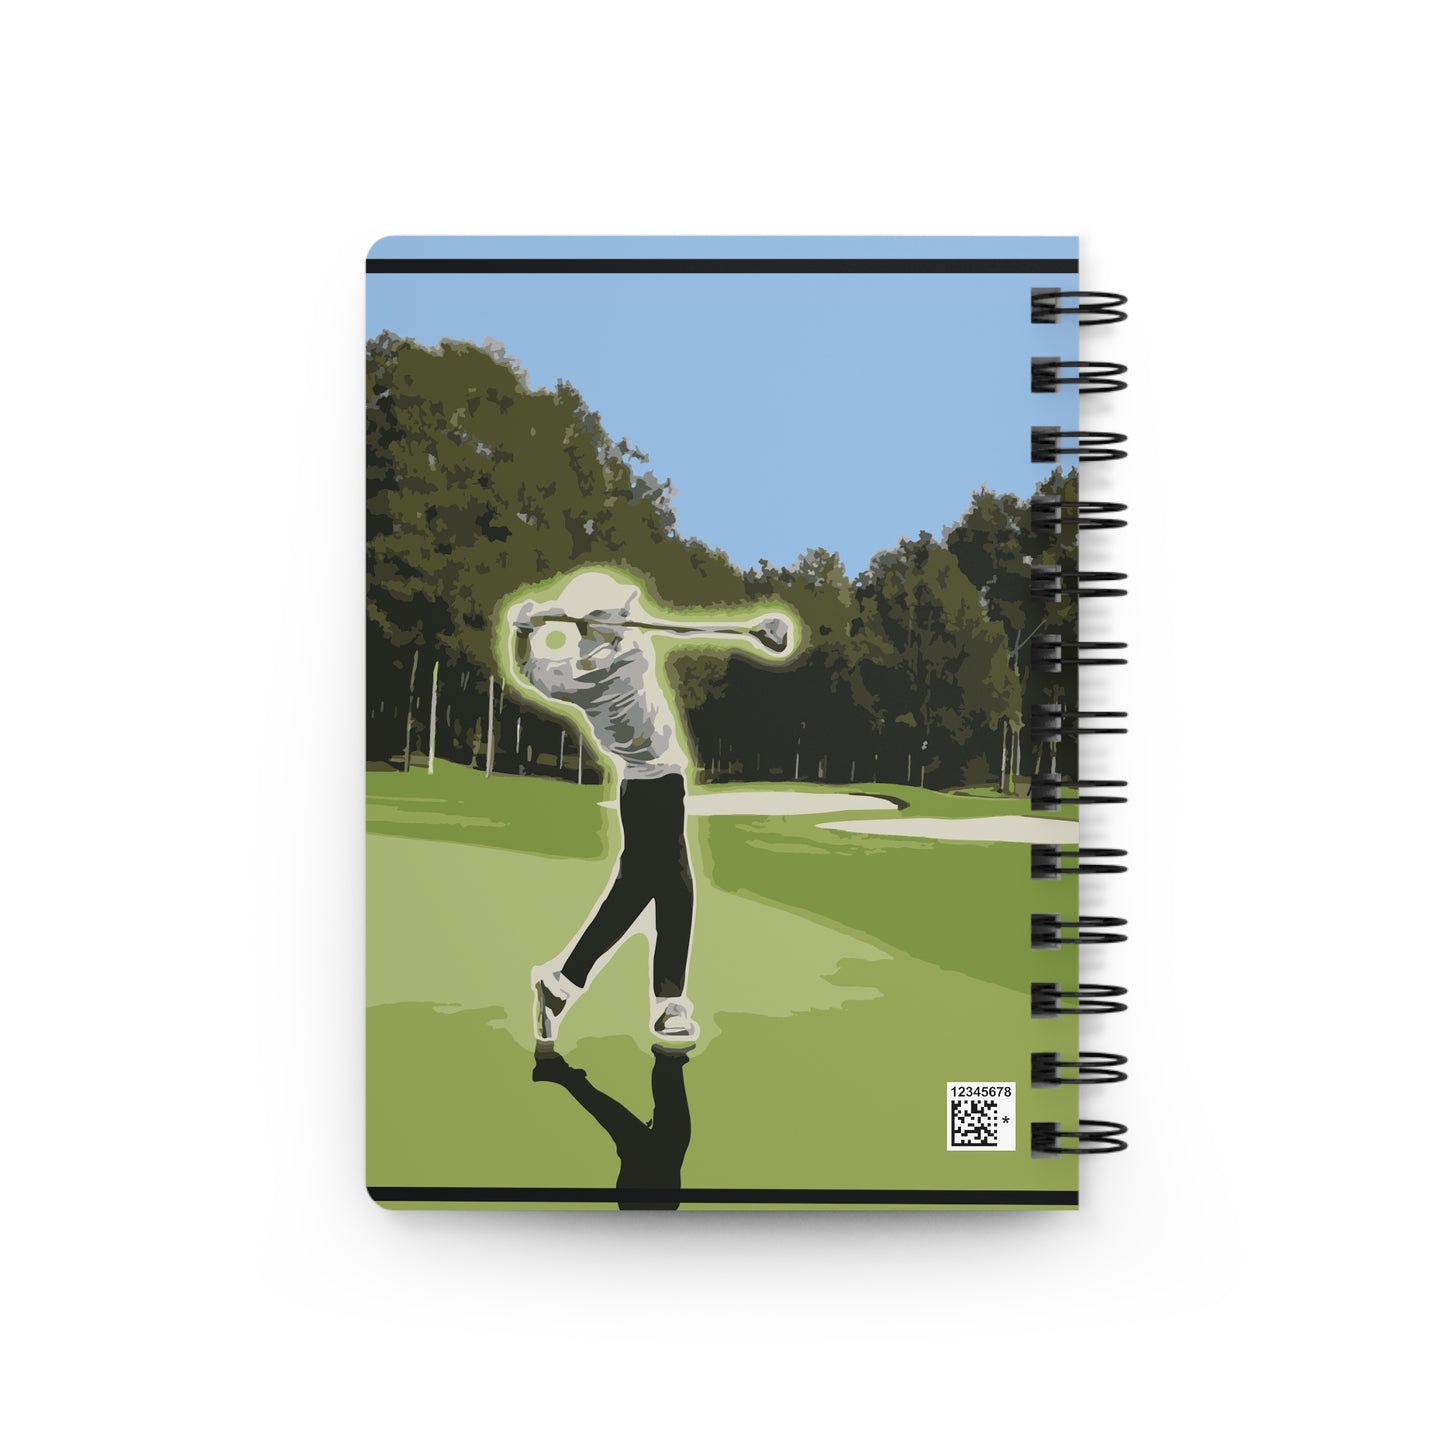 Golfing styled Adventure Spiral Bound Journal